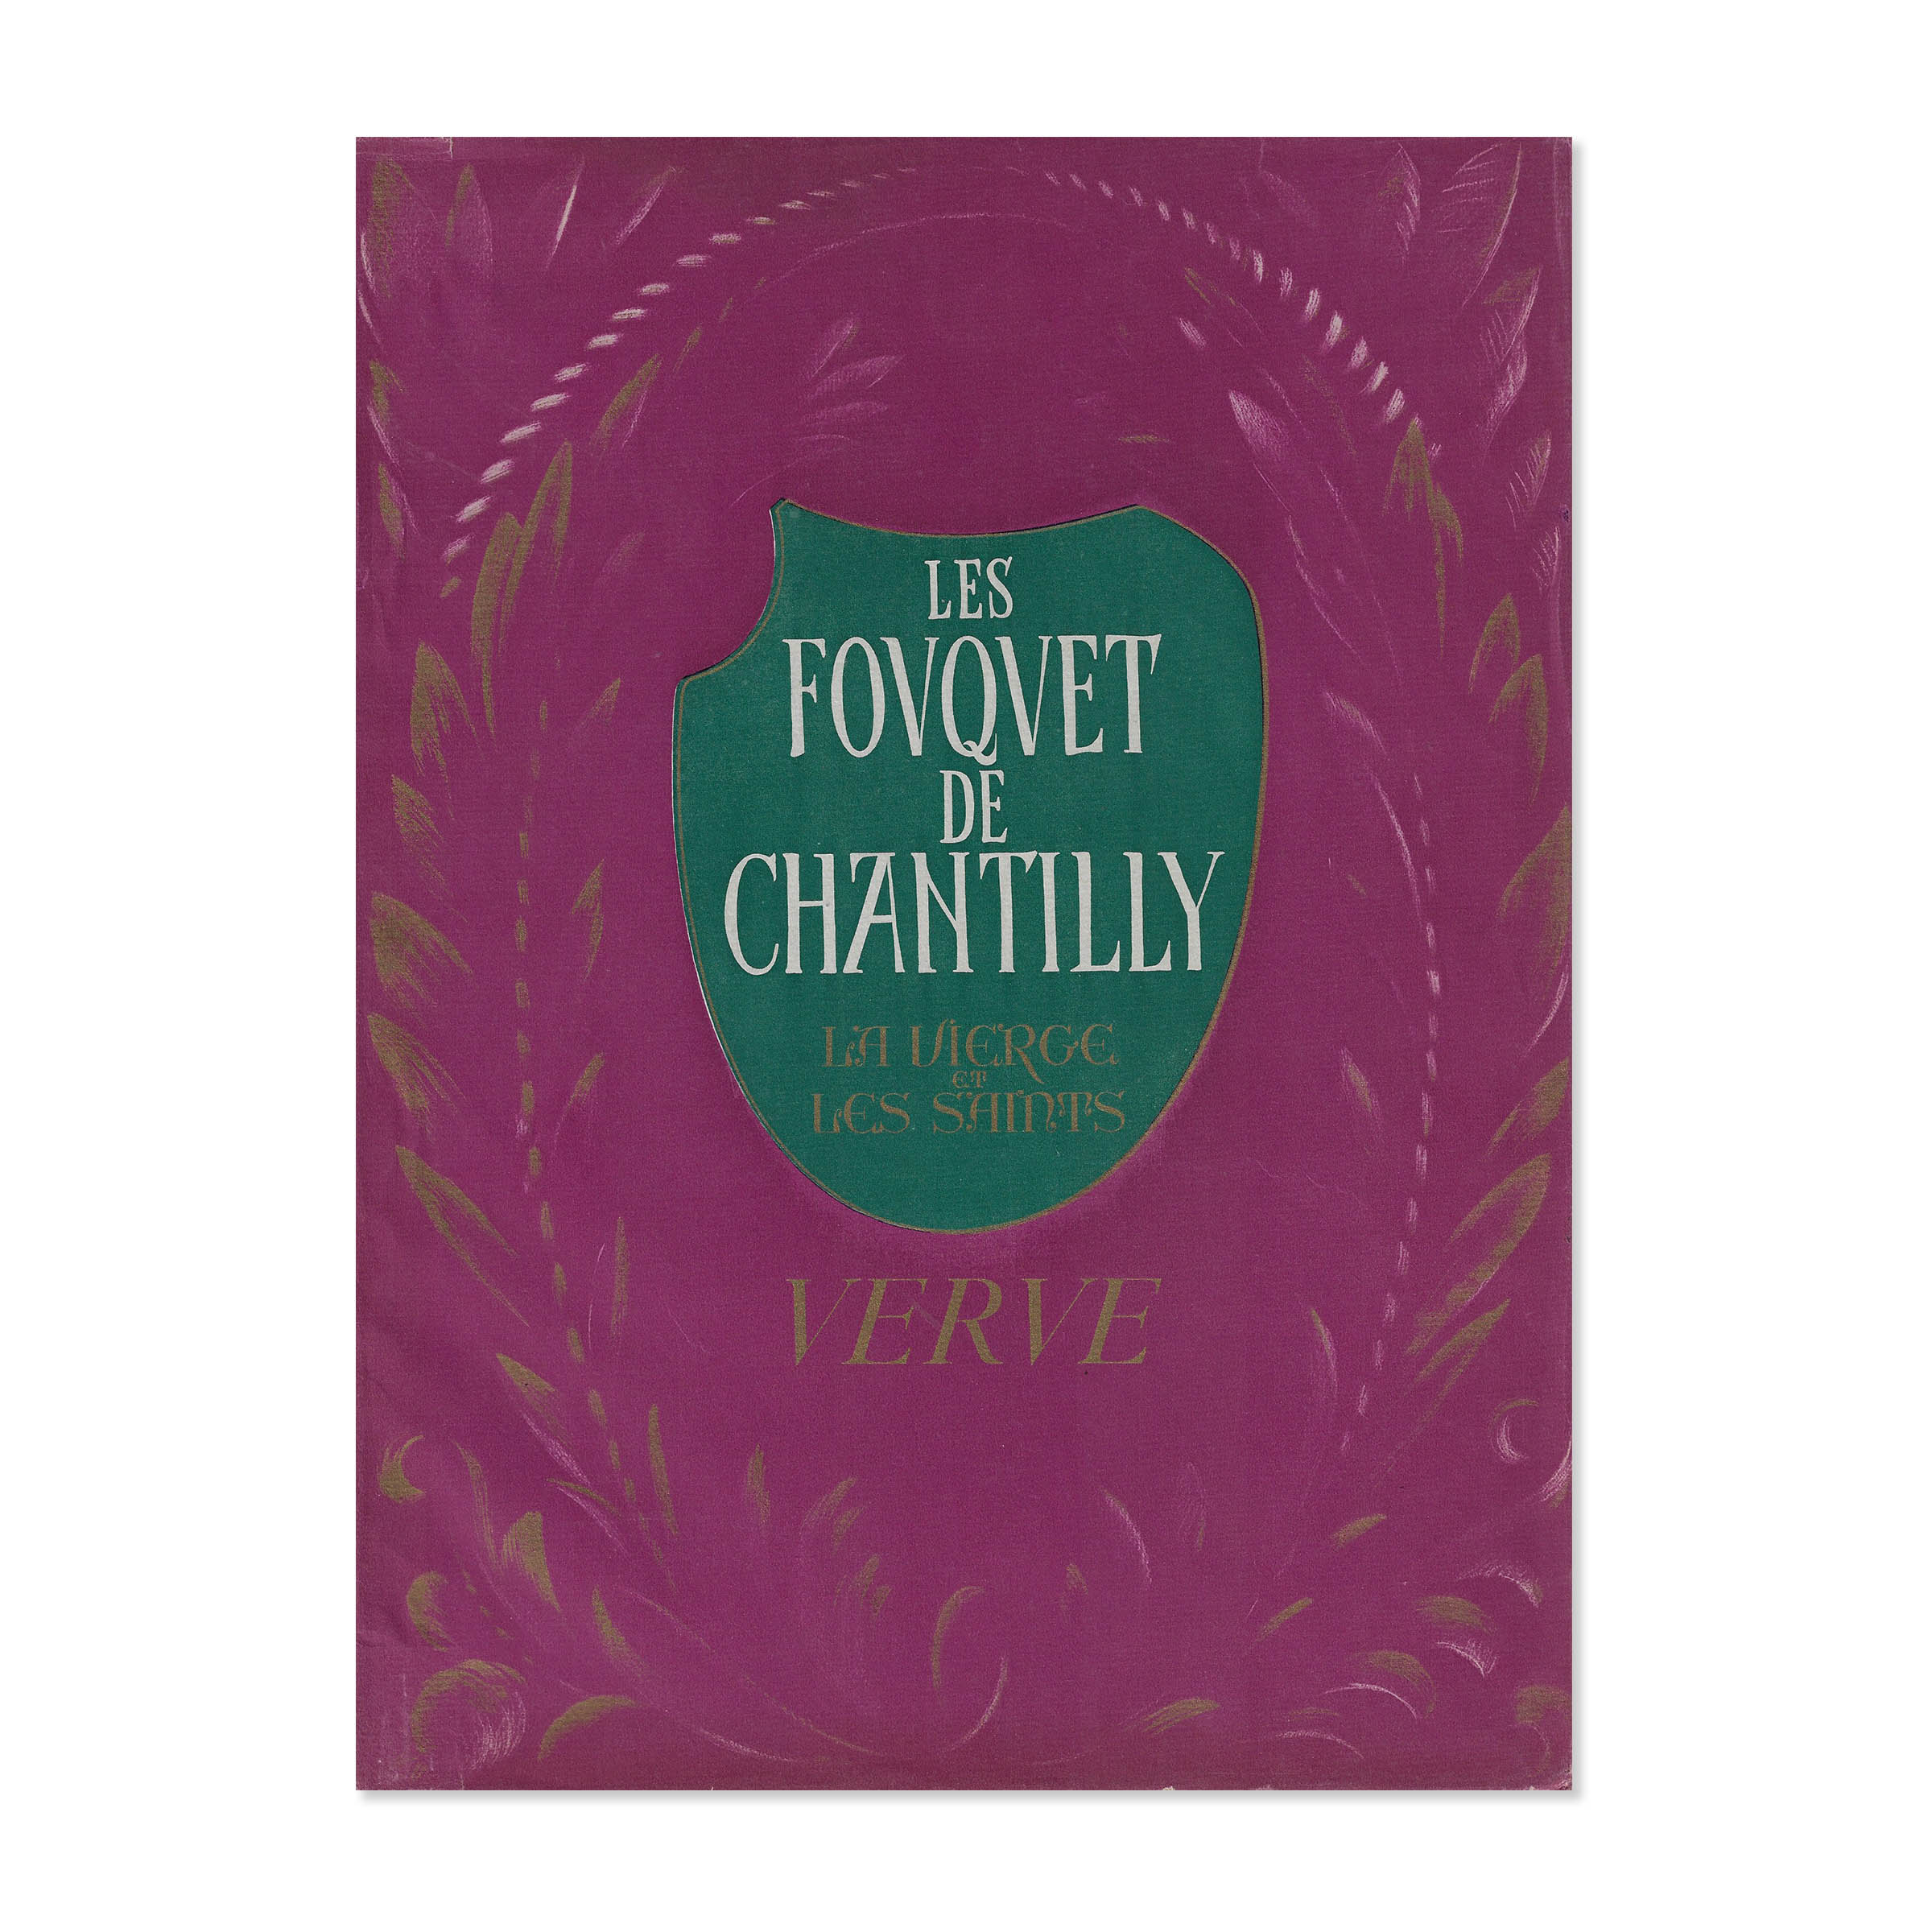 Verve 12. Les fouquet de Chantilly. Cover view